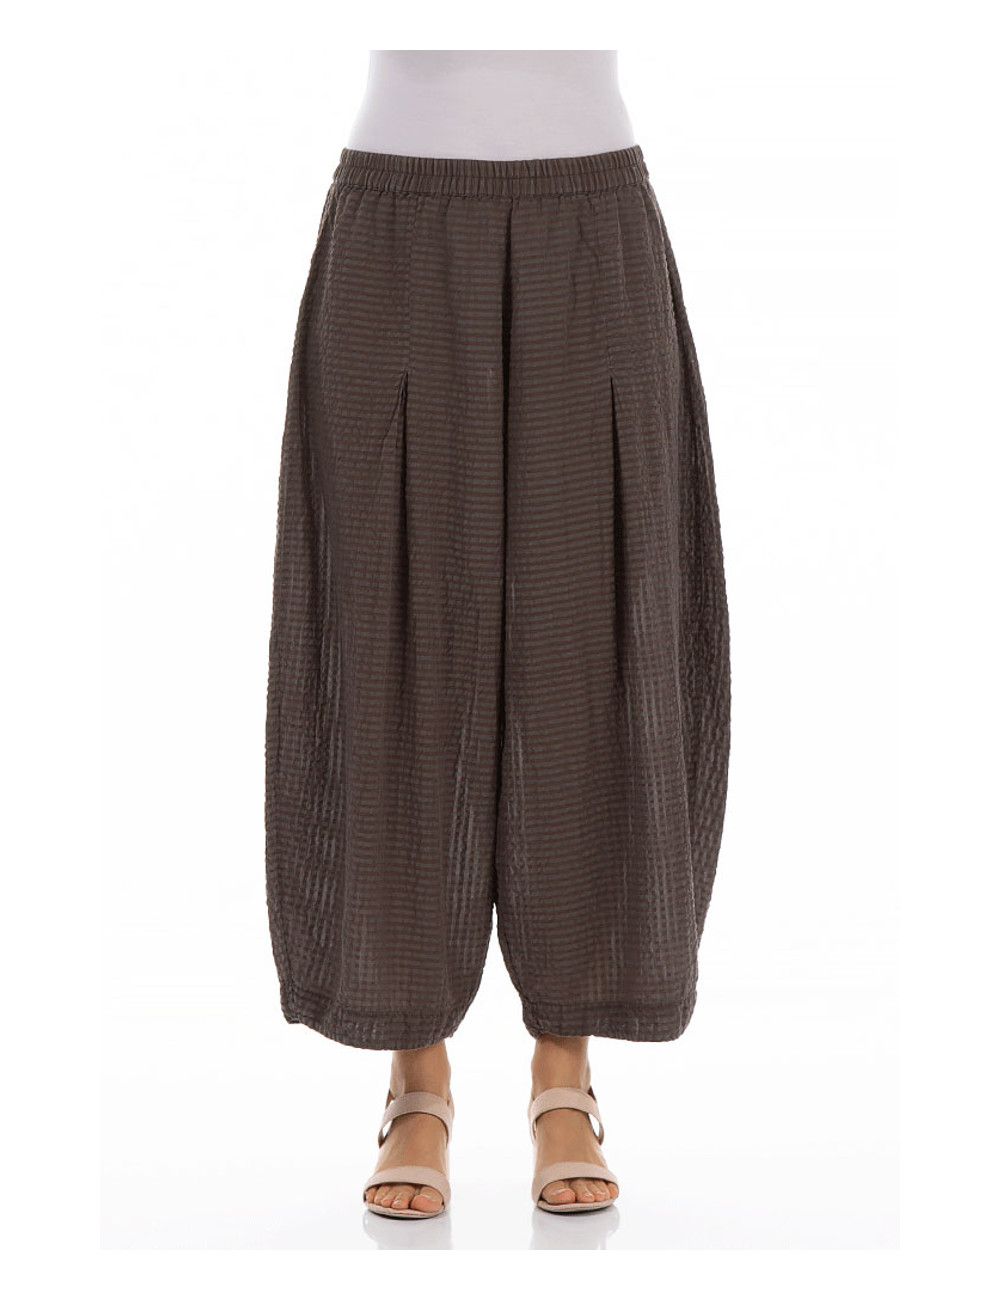 Bukser i silke og bomuld | bukser med elastik i taljen | bredbenet bukser